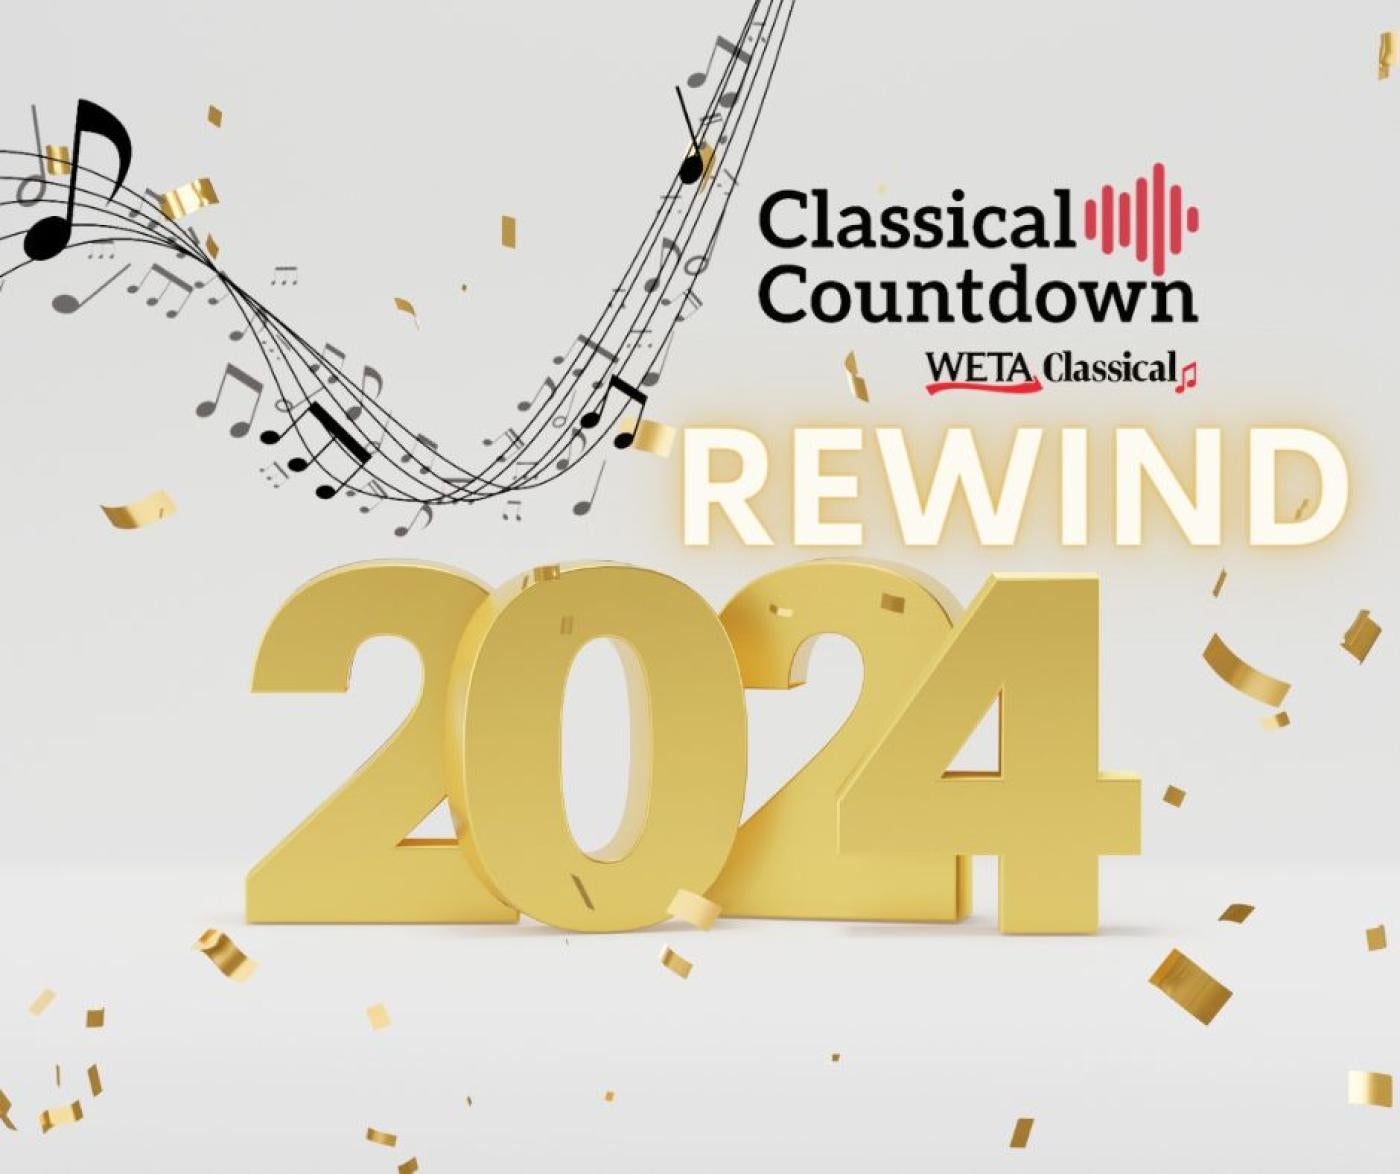 Classical Countdown Rewind